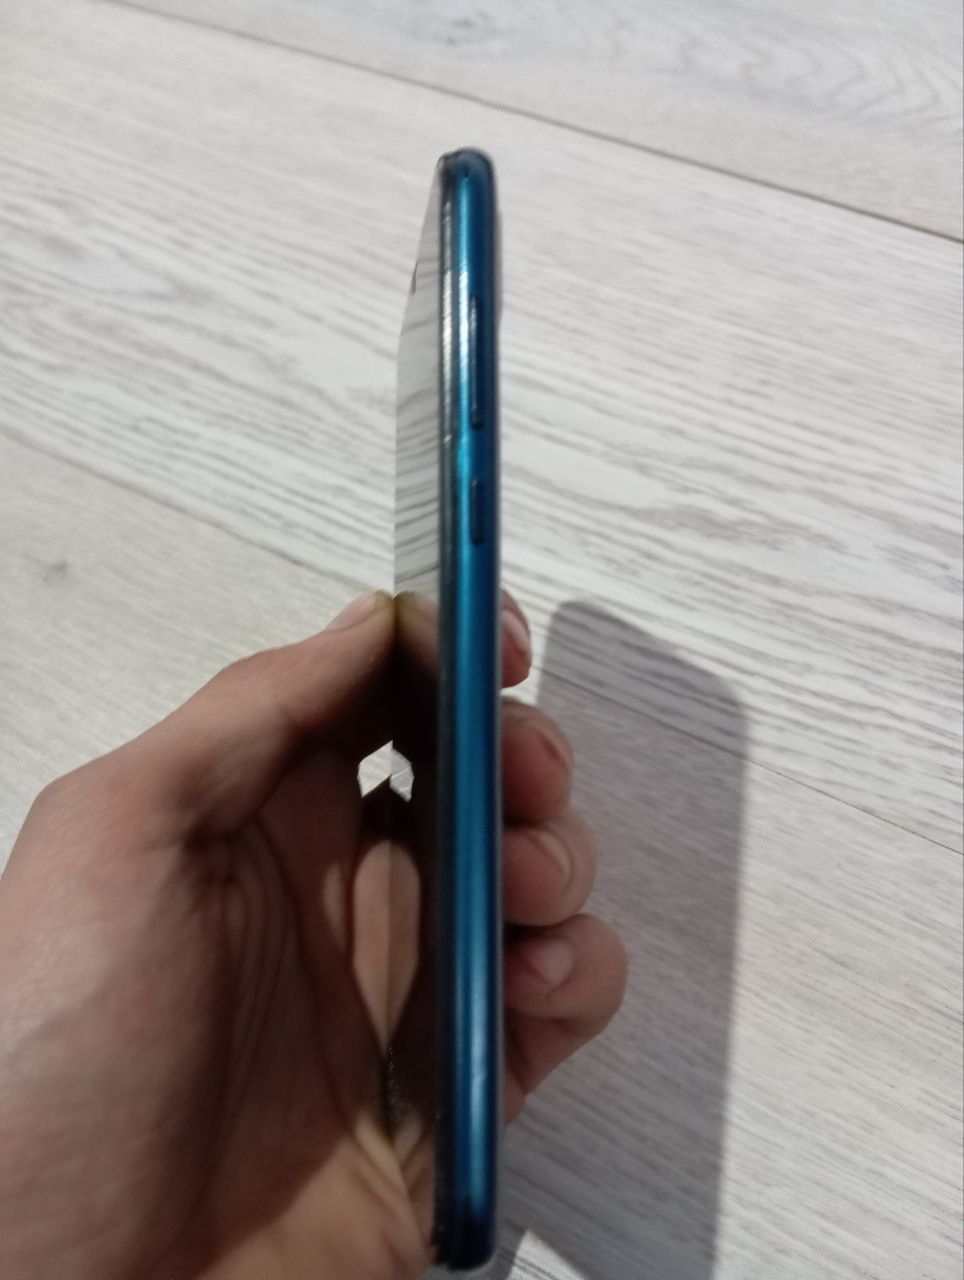 Huawei Y5 2019 xotira 32 gb xolati ideal